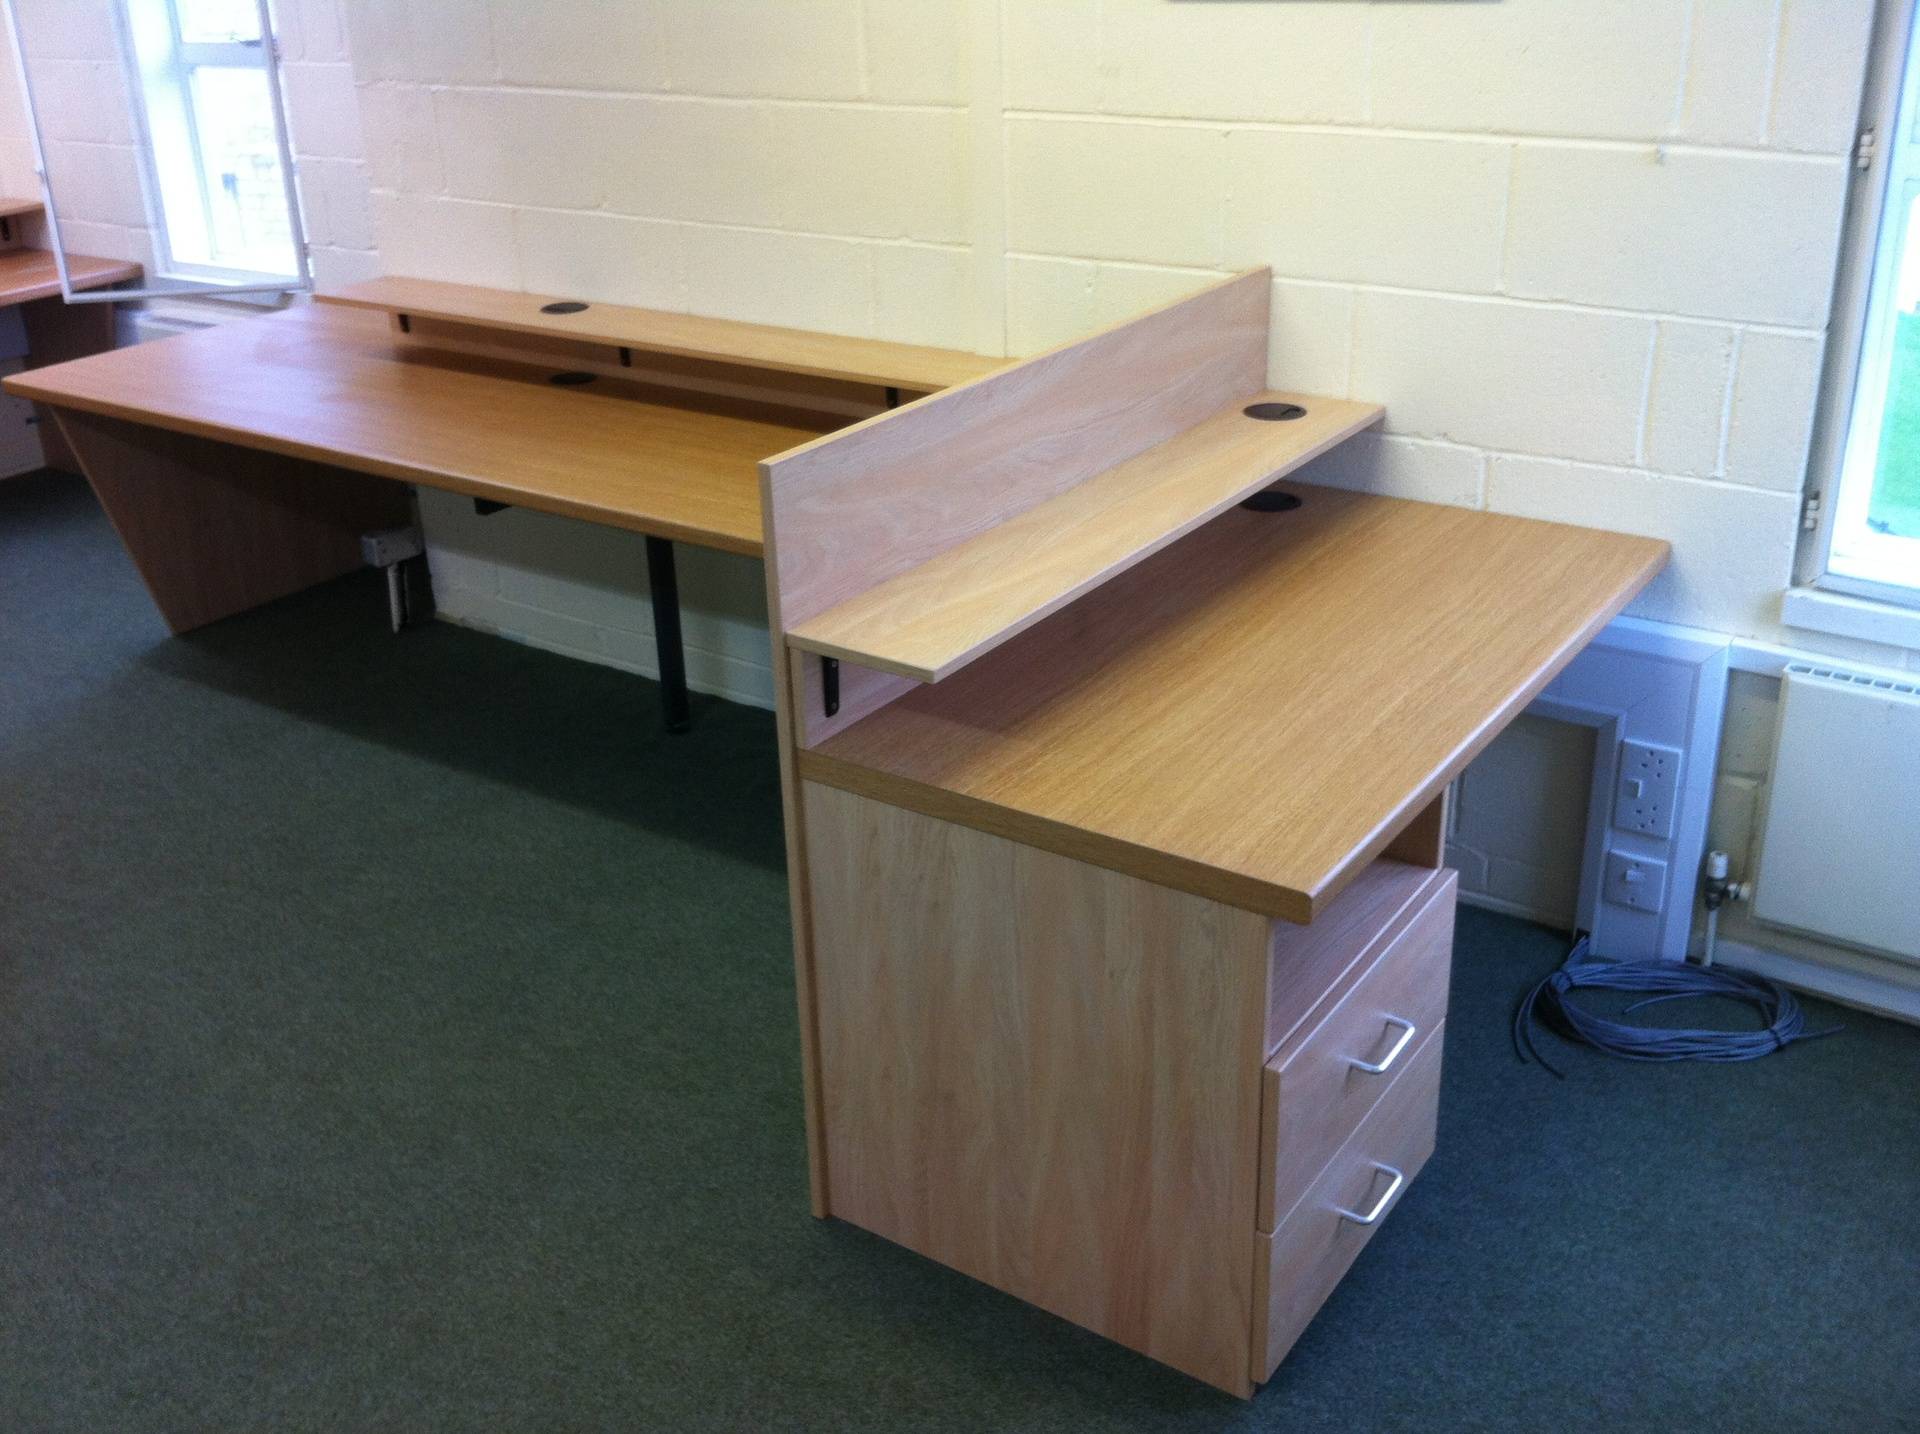 Desks for school